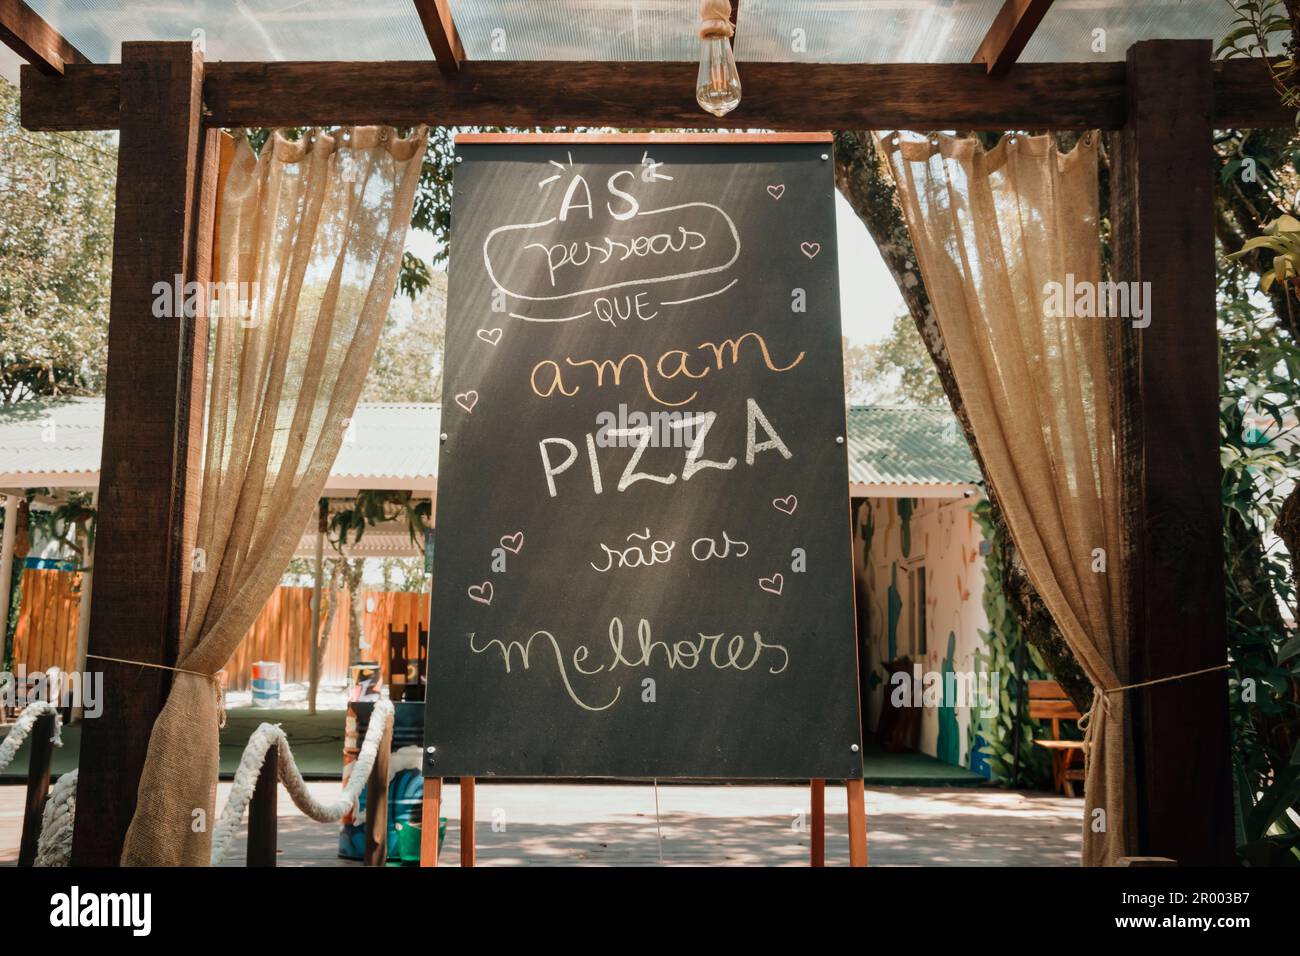 Unterschreiben Sie mit der Botschaft auf Portugiesisch - Leute, die Pizza lieben, sind die Besten. Stockfoto